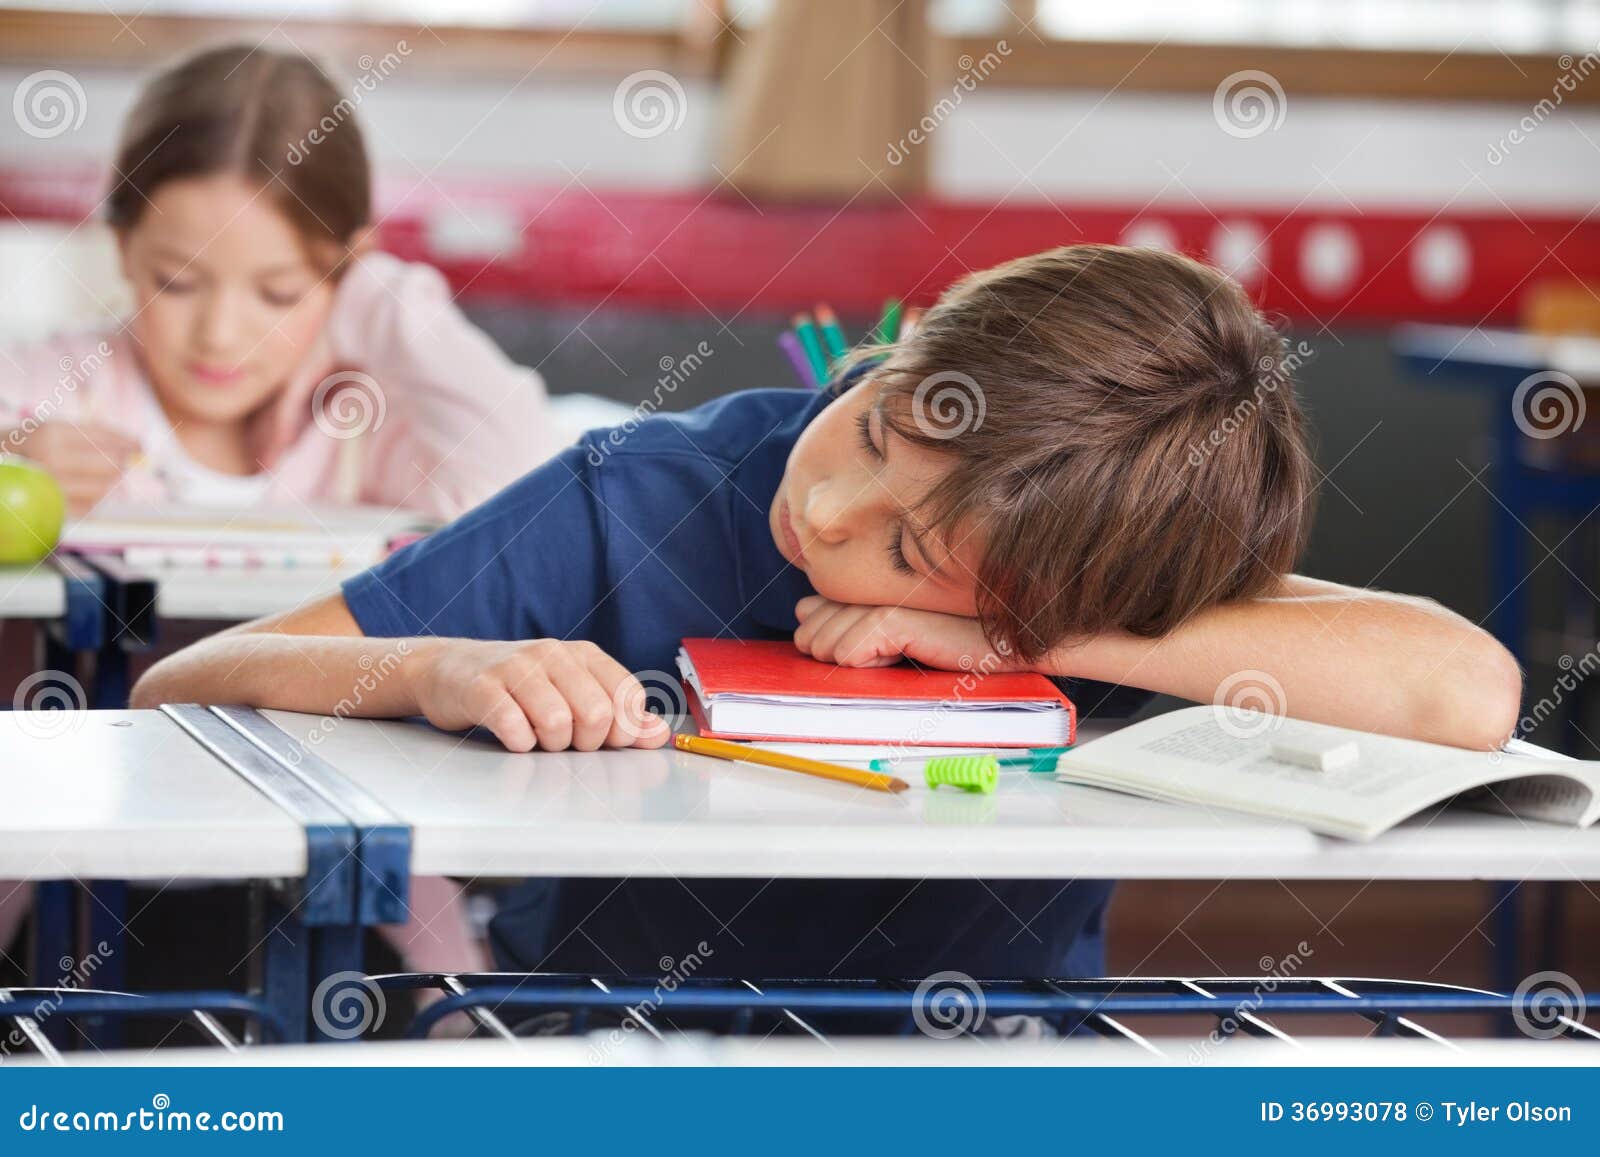 Ύπνος αγοριών ενώ κορίτσι που μελετά στο υπόβαθρο. Στοιχειώδης ύπνος αγοριών ενώ κορίτσι που μελετά στο υπόβαθρο στην τάξη